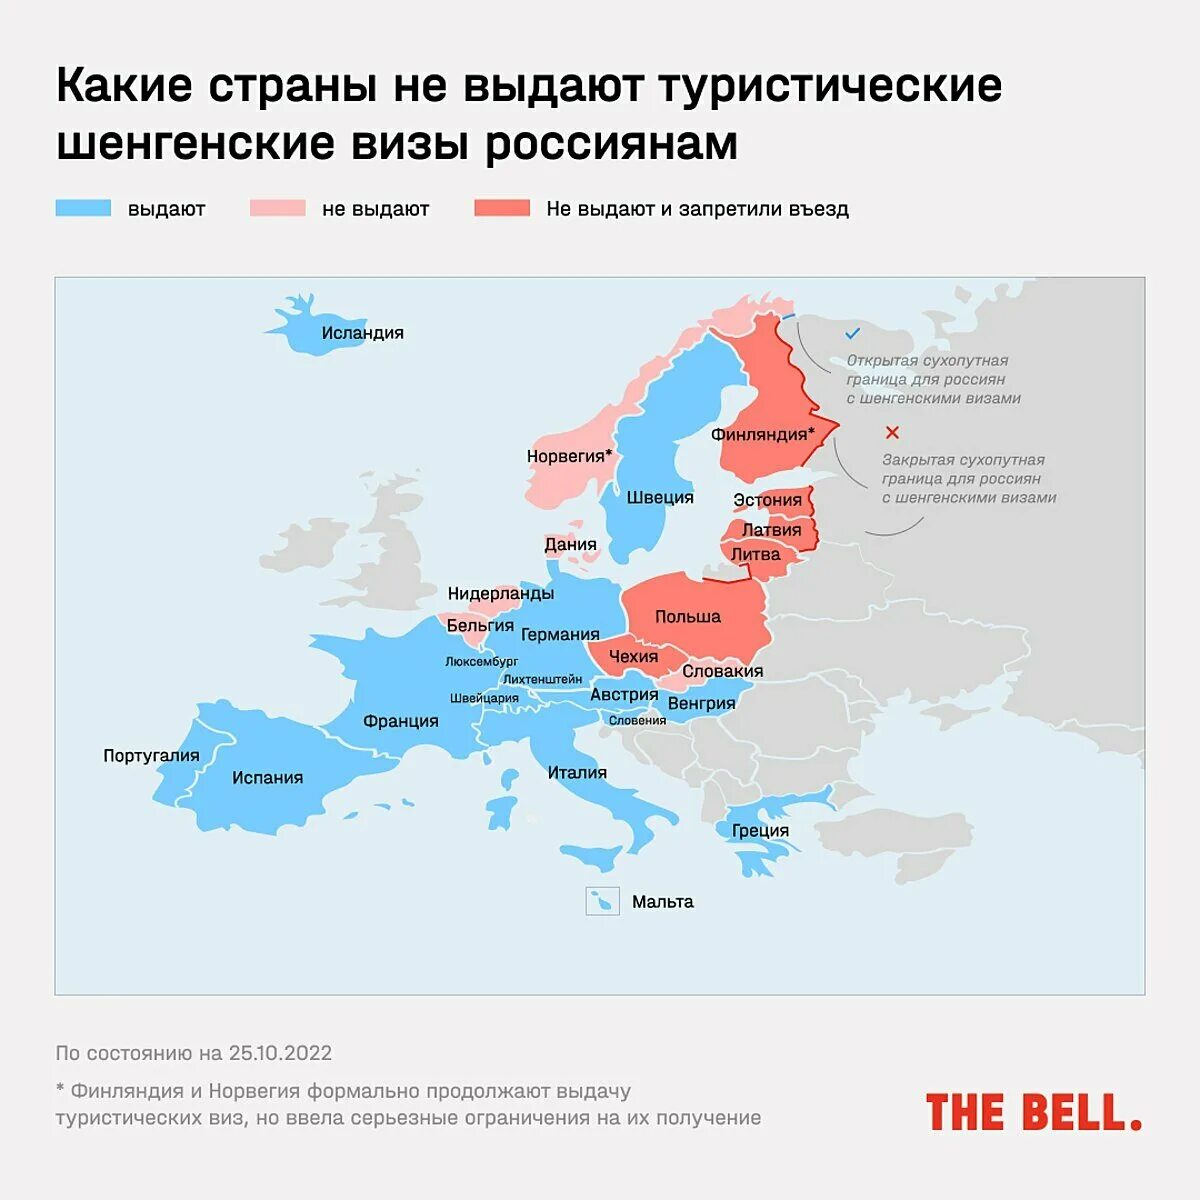 Шенгенская виза россиянам сейчас. Страна россияне. Страны Шенгена на карте. Какие страны запретили въезд россиянам. Страны Шенгена 2023 на карте.